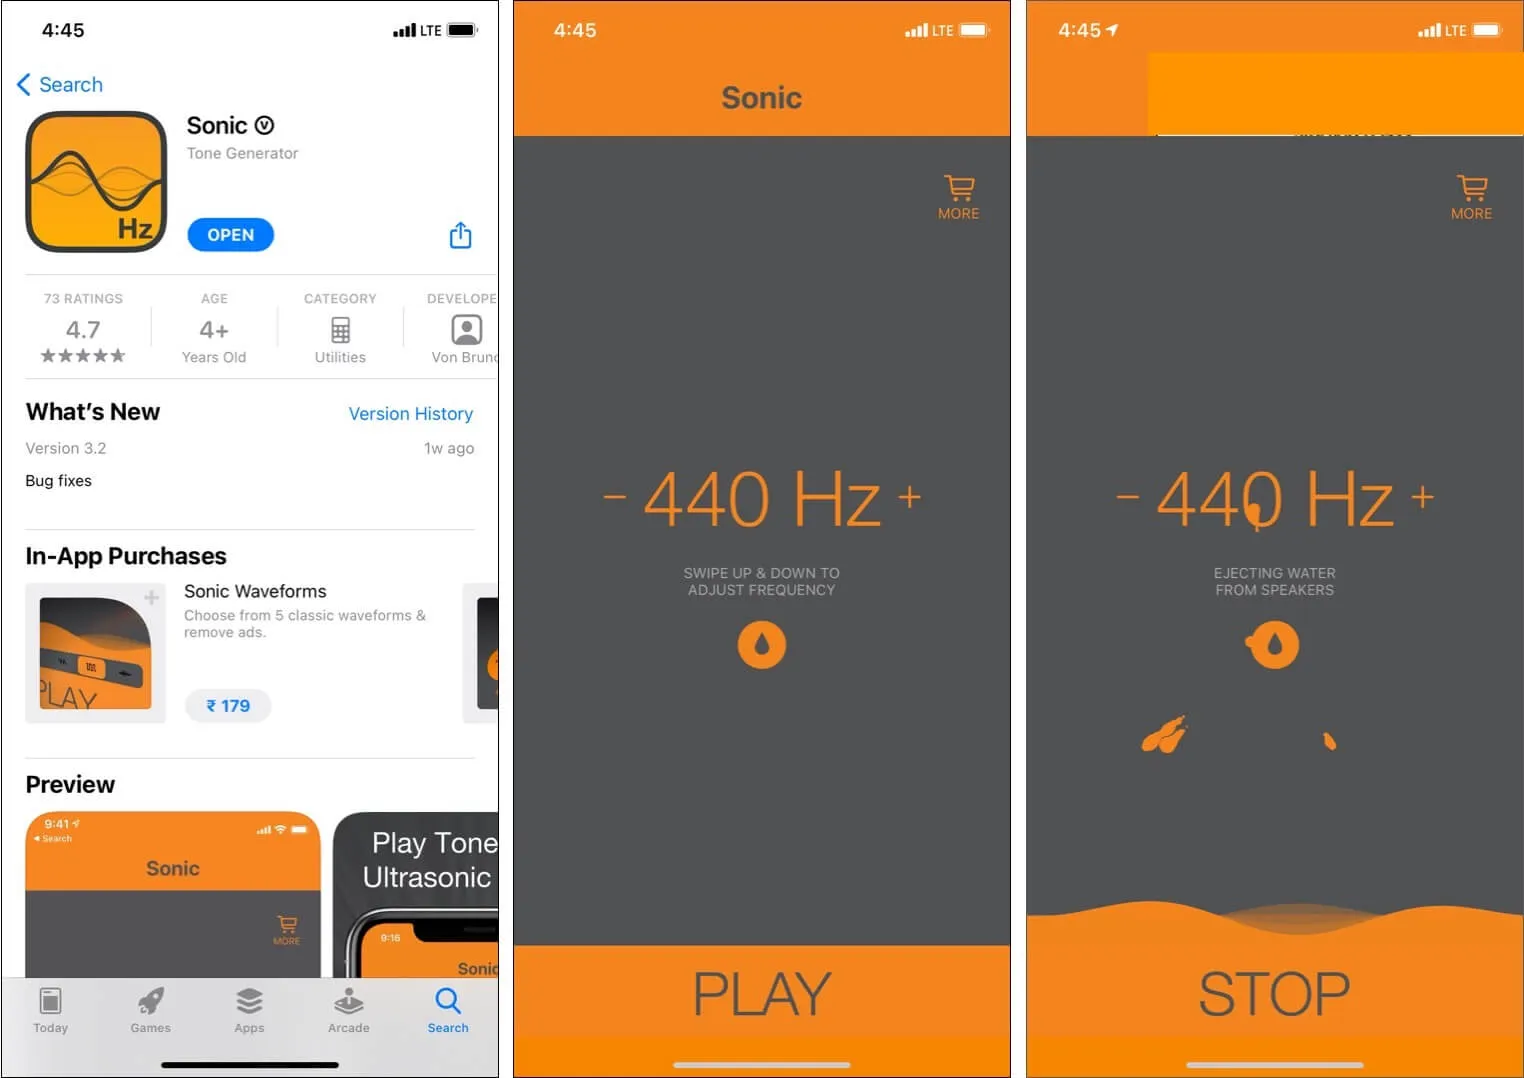 Verwenden Sie die Sonic-App, um Wasser aus dem iPhone-Lautsprechergrill auszustoßen